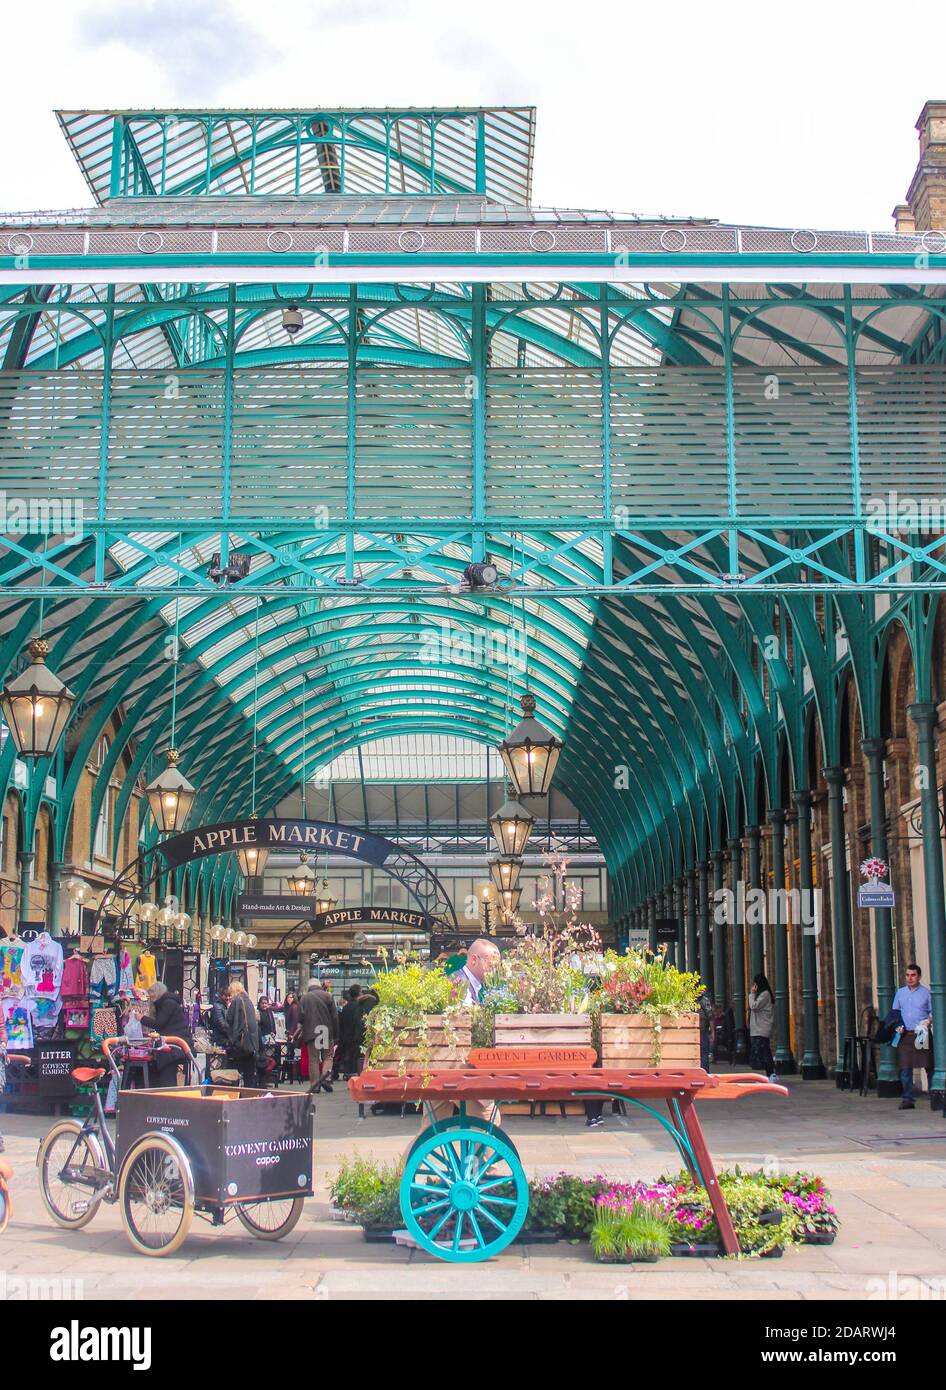 LONDRA - UK - 03 maggio 2018: Vista del mercato di Covent Garden a Londra. Covent Garden - una delle principali attrazioni turistiche di Londra Foto Stock